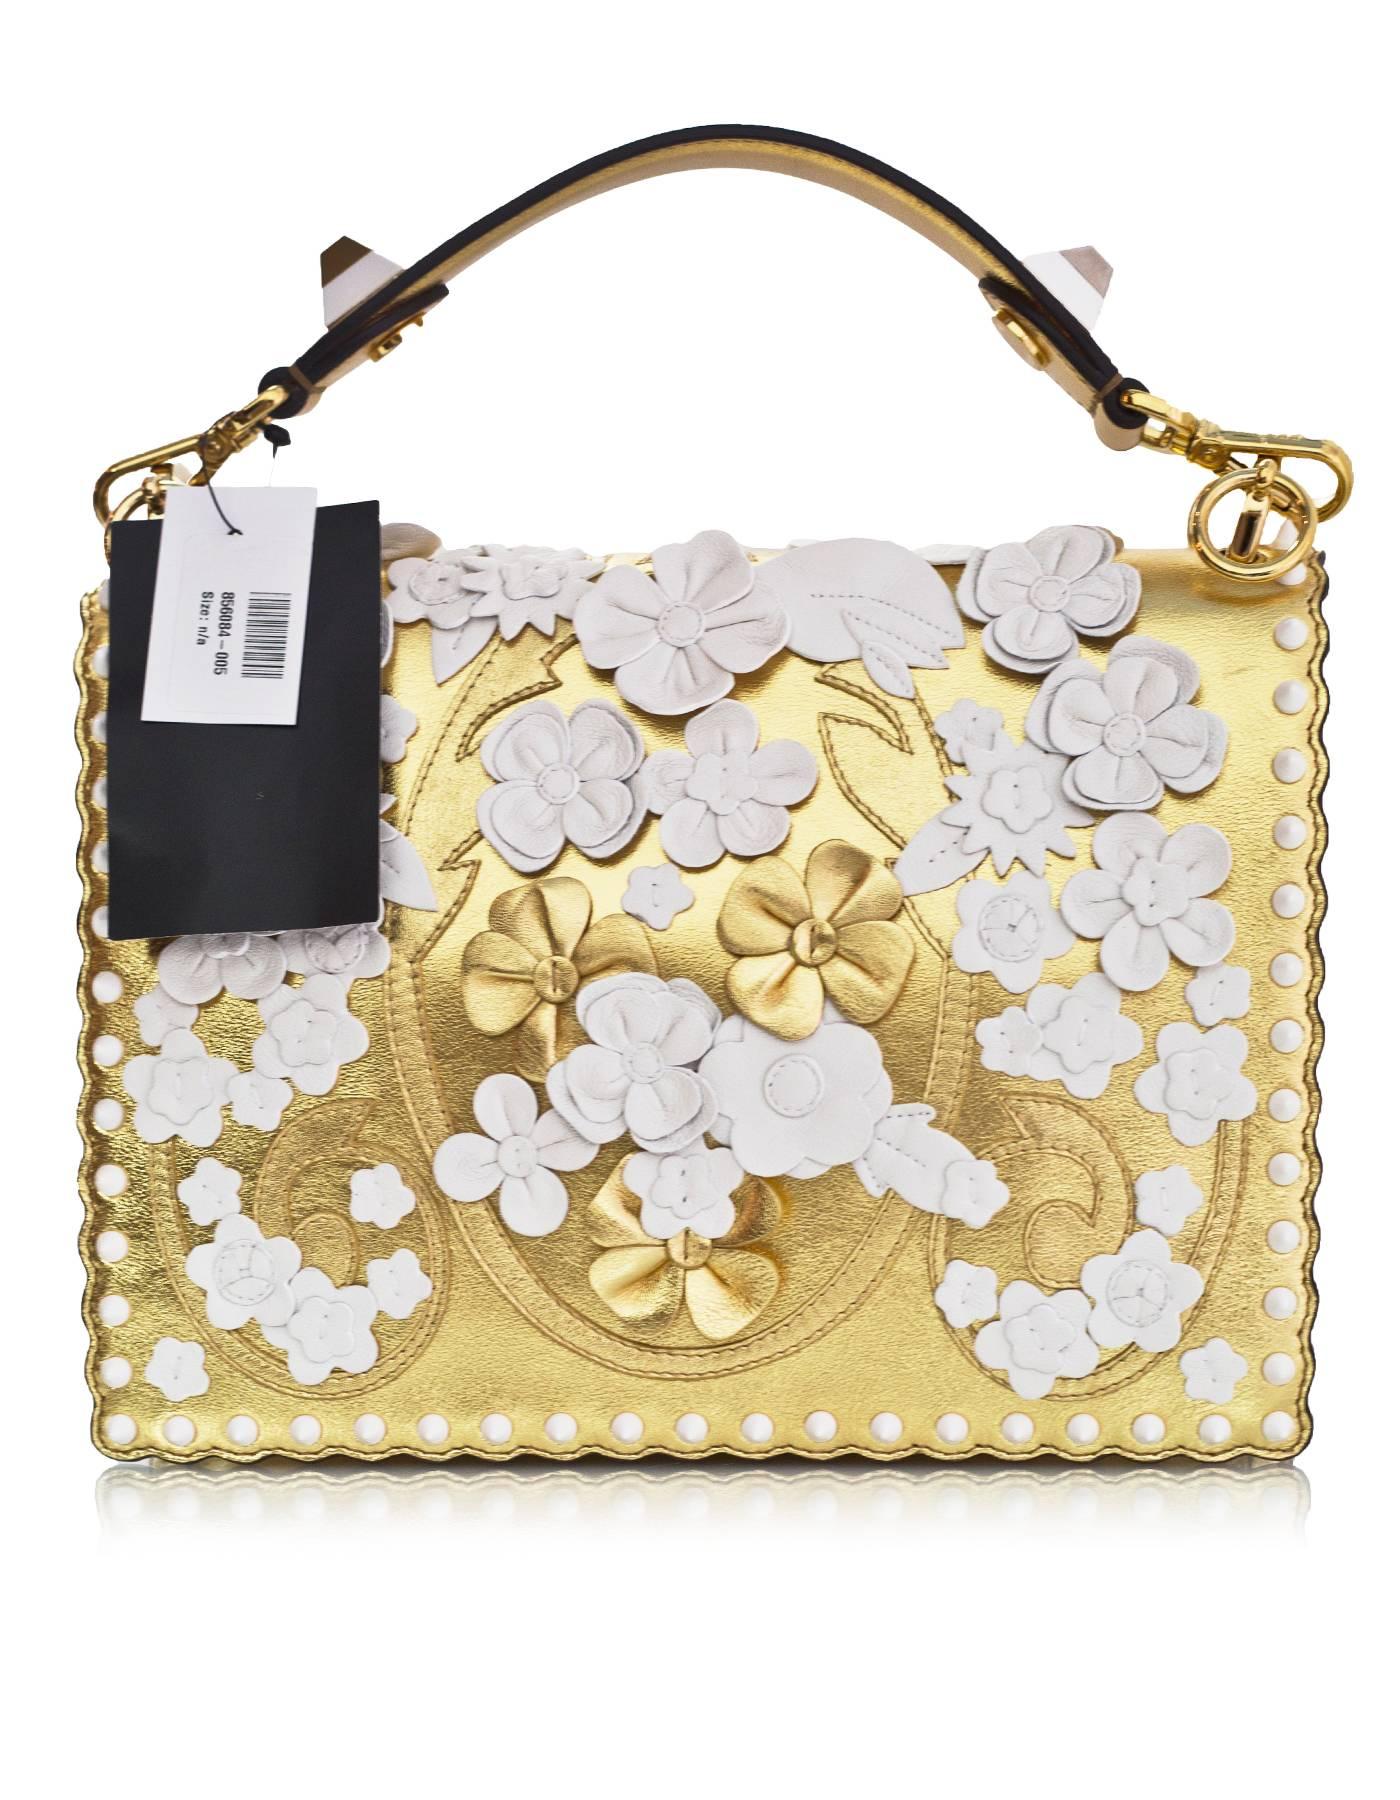 Beige Fendi 2017 Gold & White Kan I Floral Monster Satchel Bag rt. $5, 950